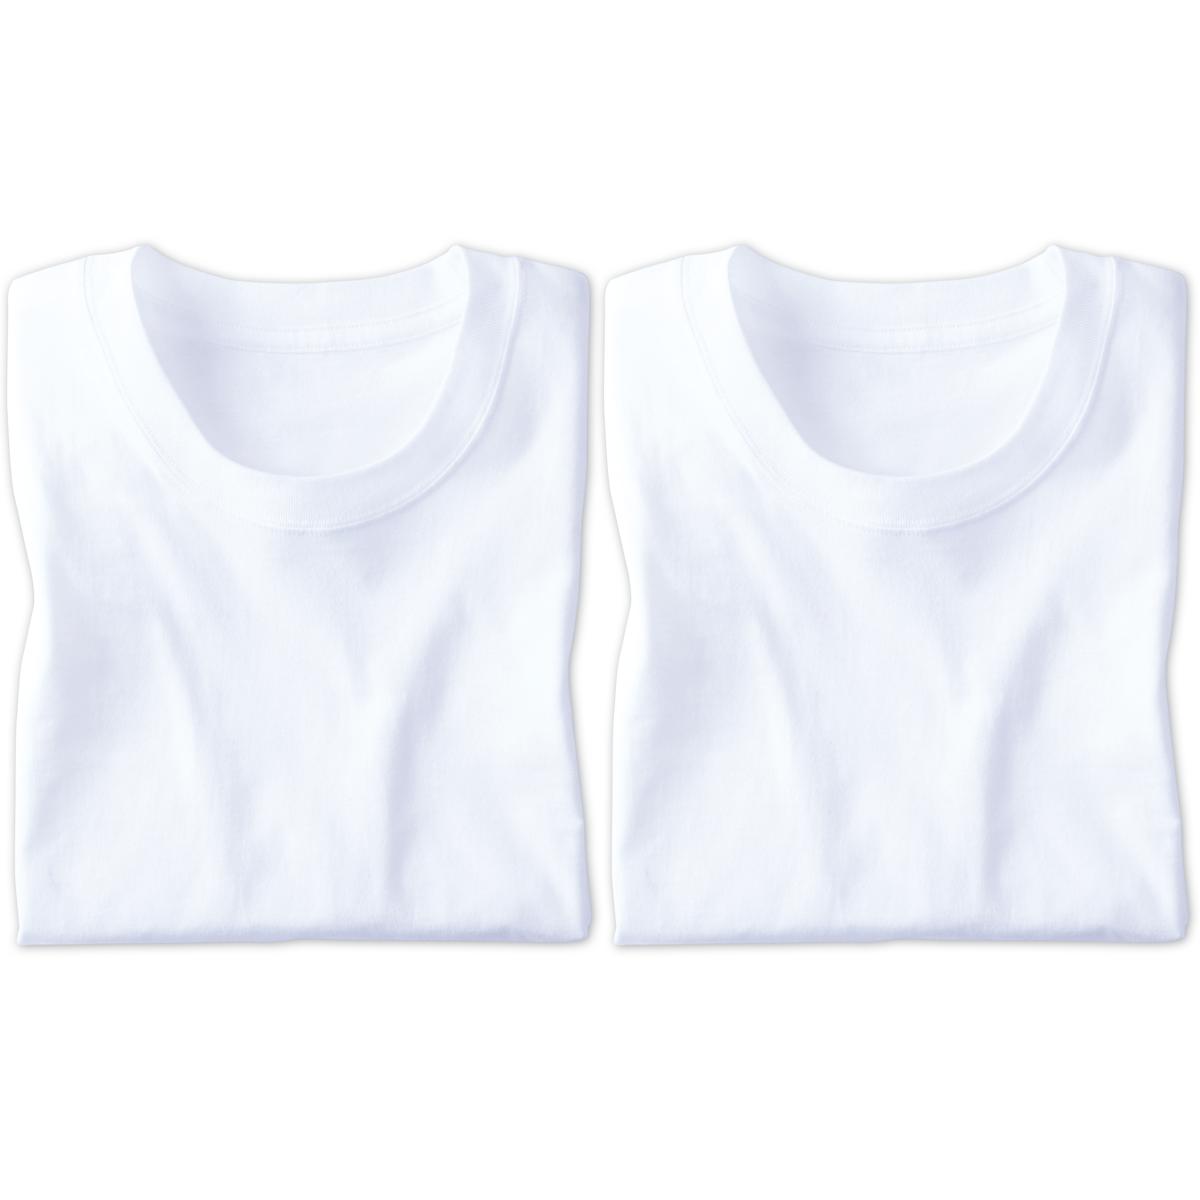 同色2枚組 綿100%クルーネックTシャツ/肌触りさらり(半袖) - ファッション通販ならセシール(cecile)